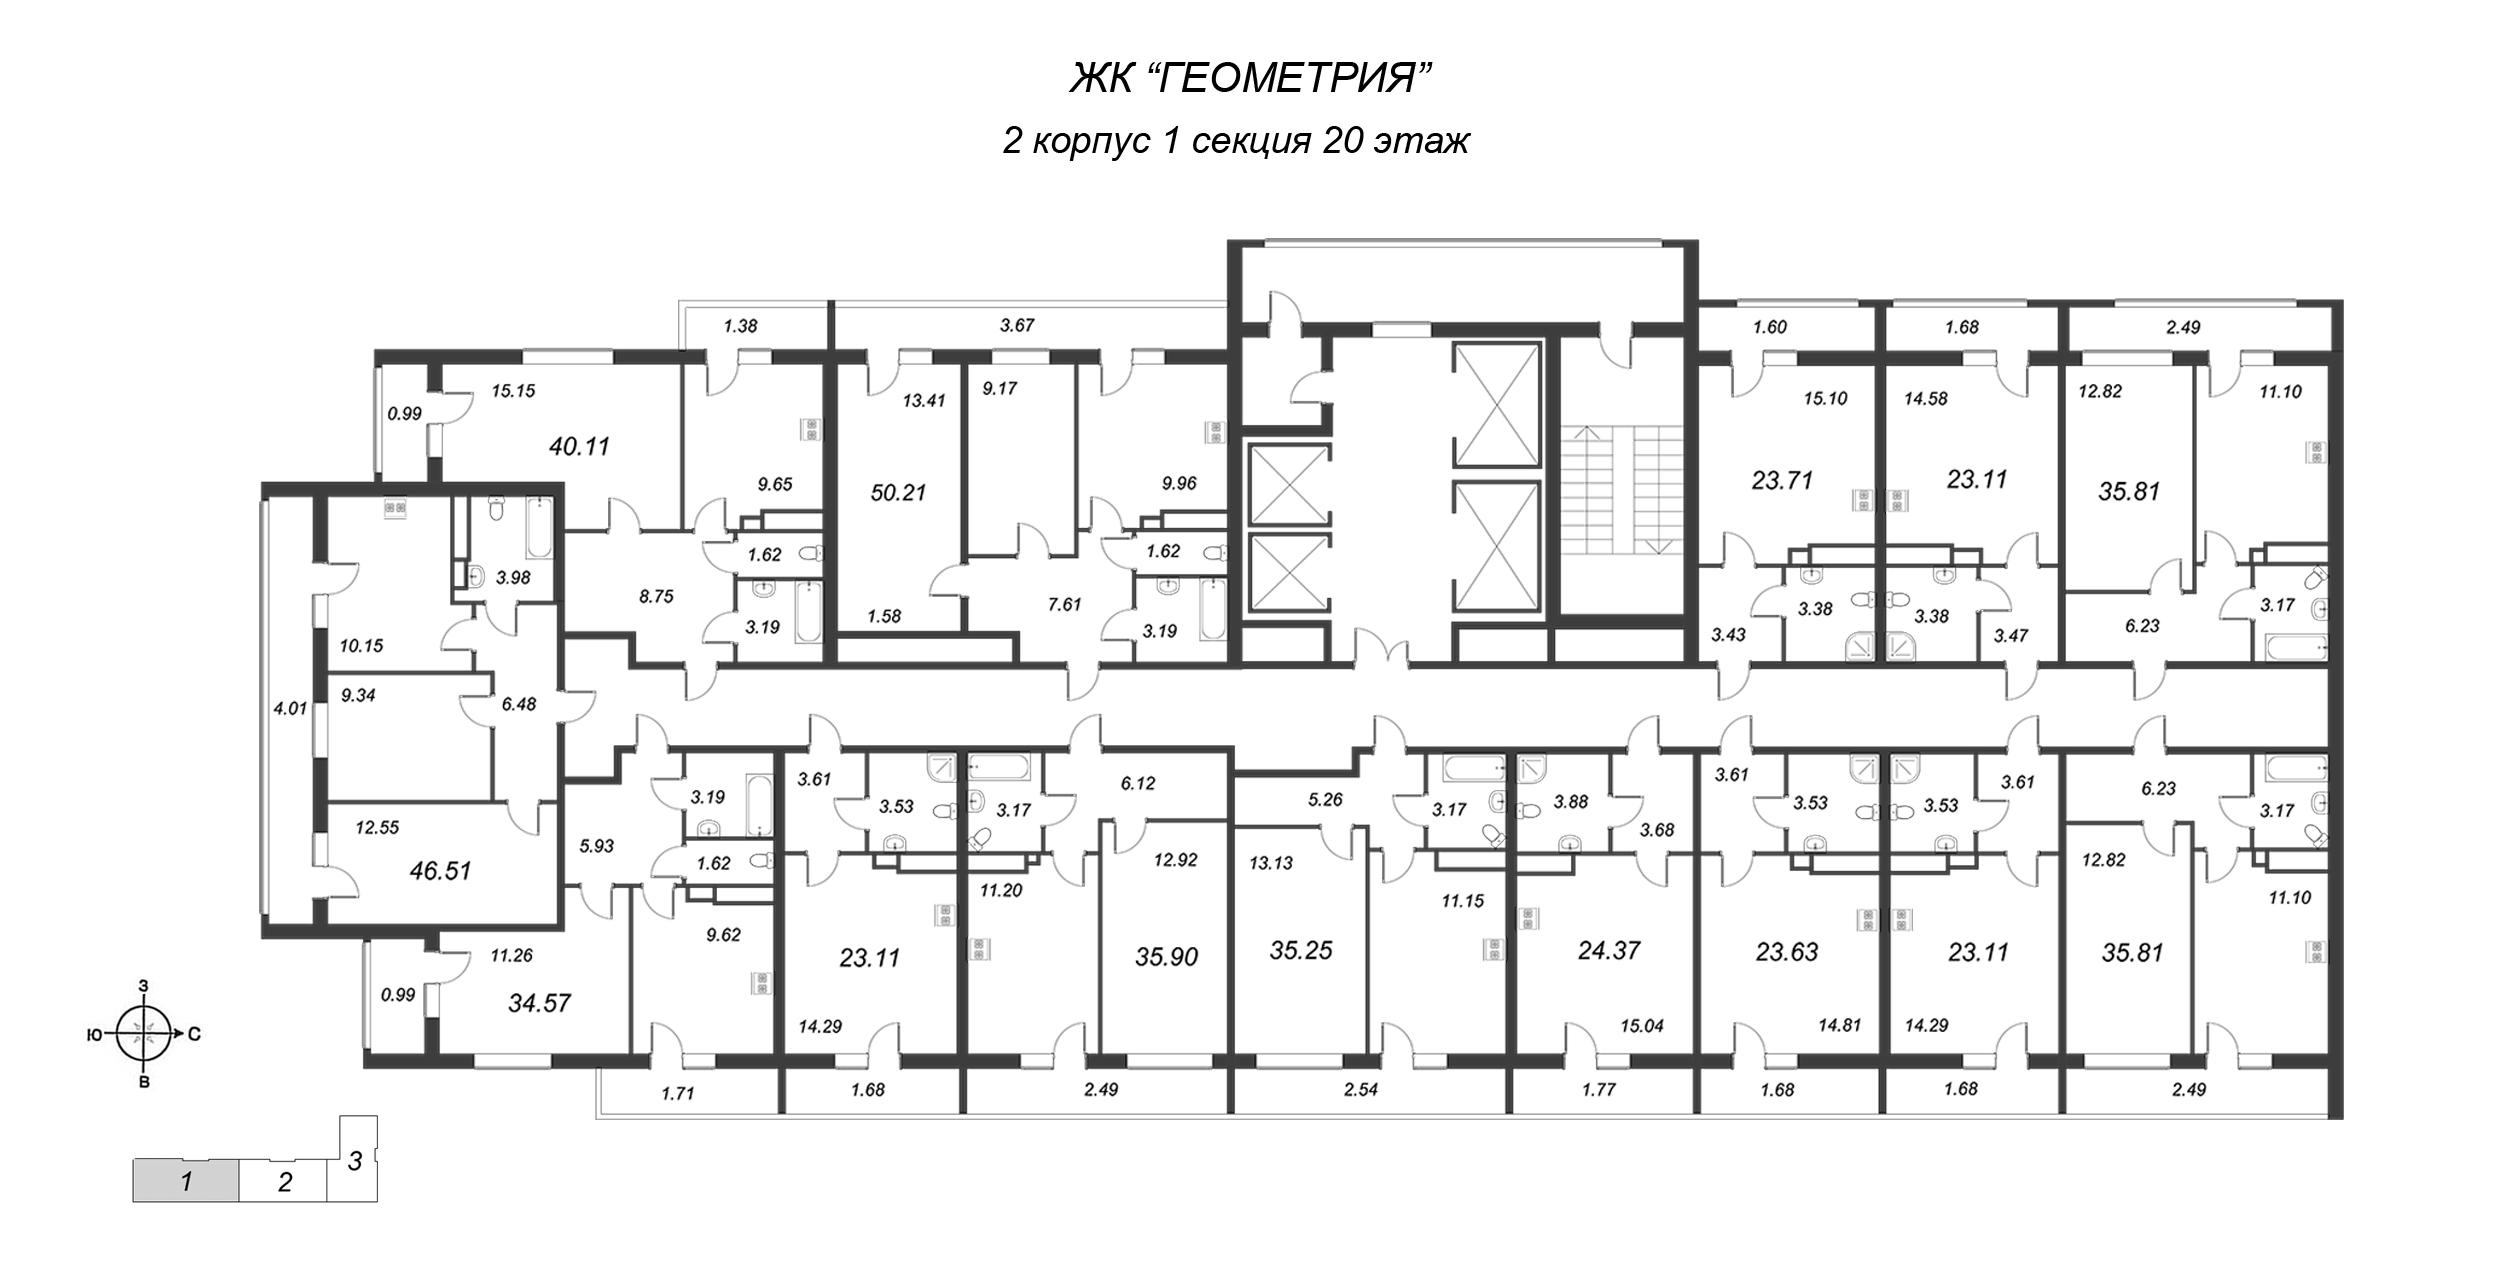 Квартира-студия, 22.3 м² в ЖК "Геометрия" - планировка этажа